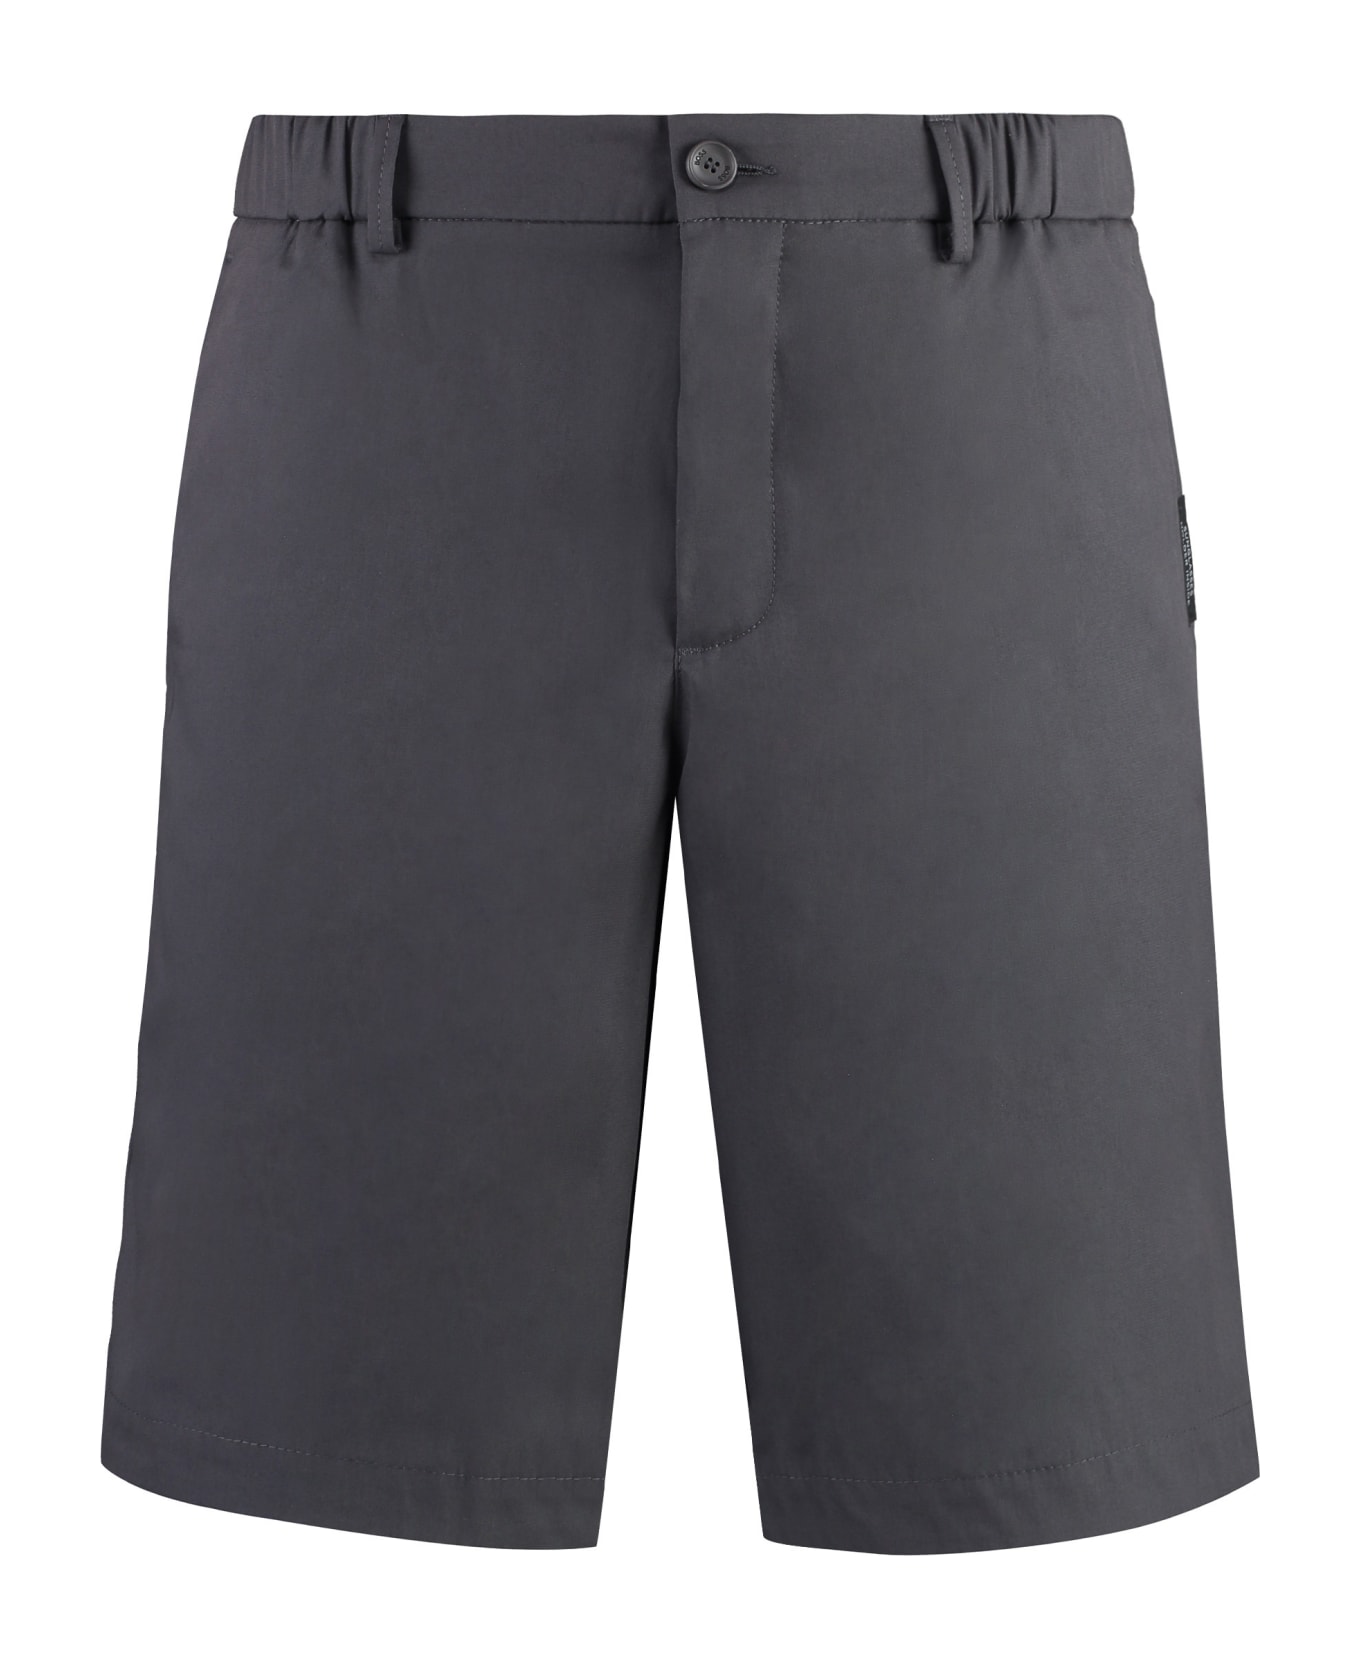 Hugo Boss Cotton Bermuda Shorts - grey ショートパンツ